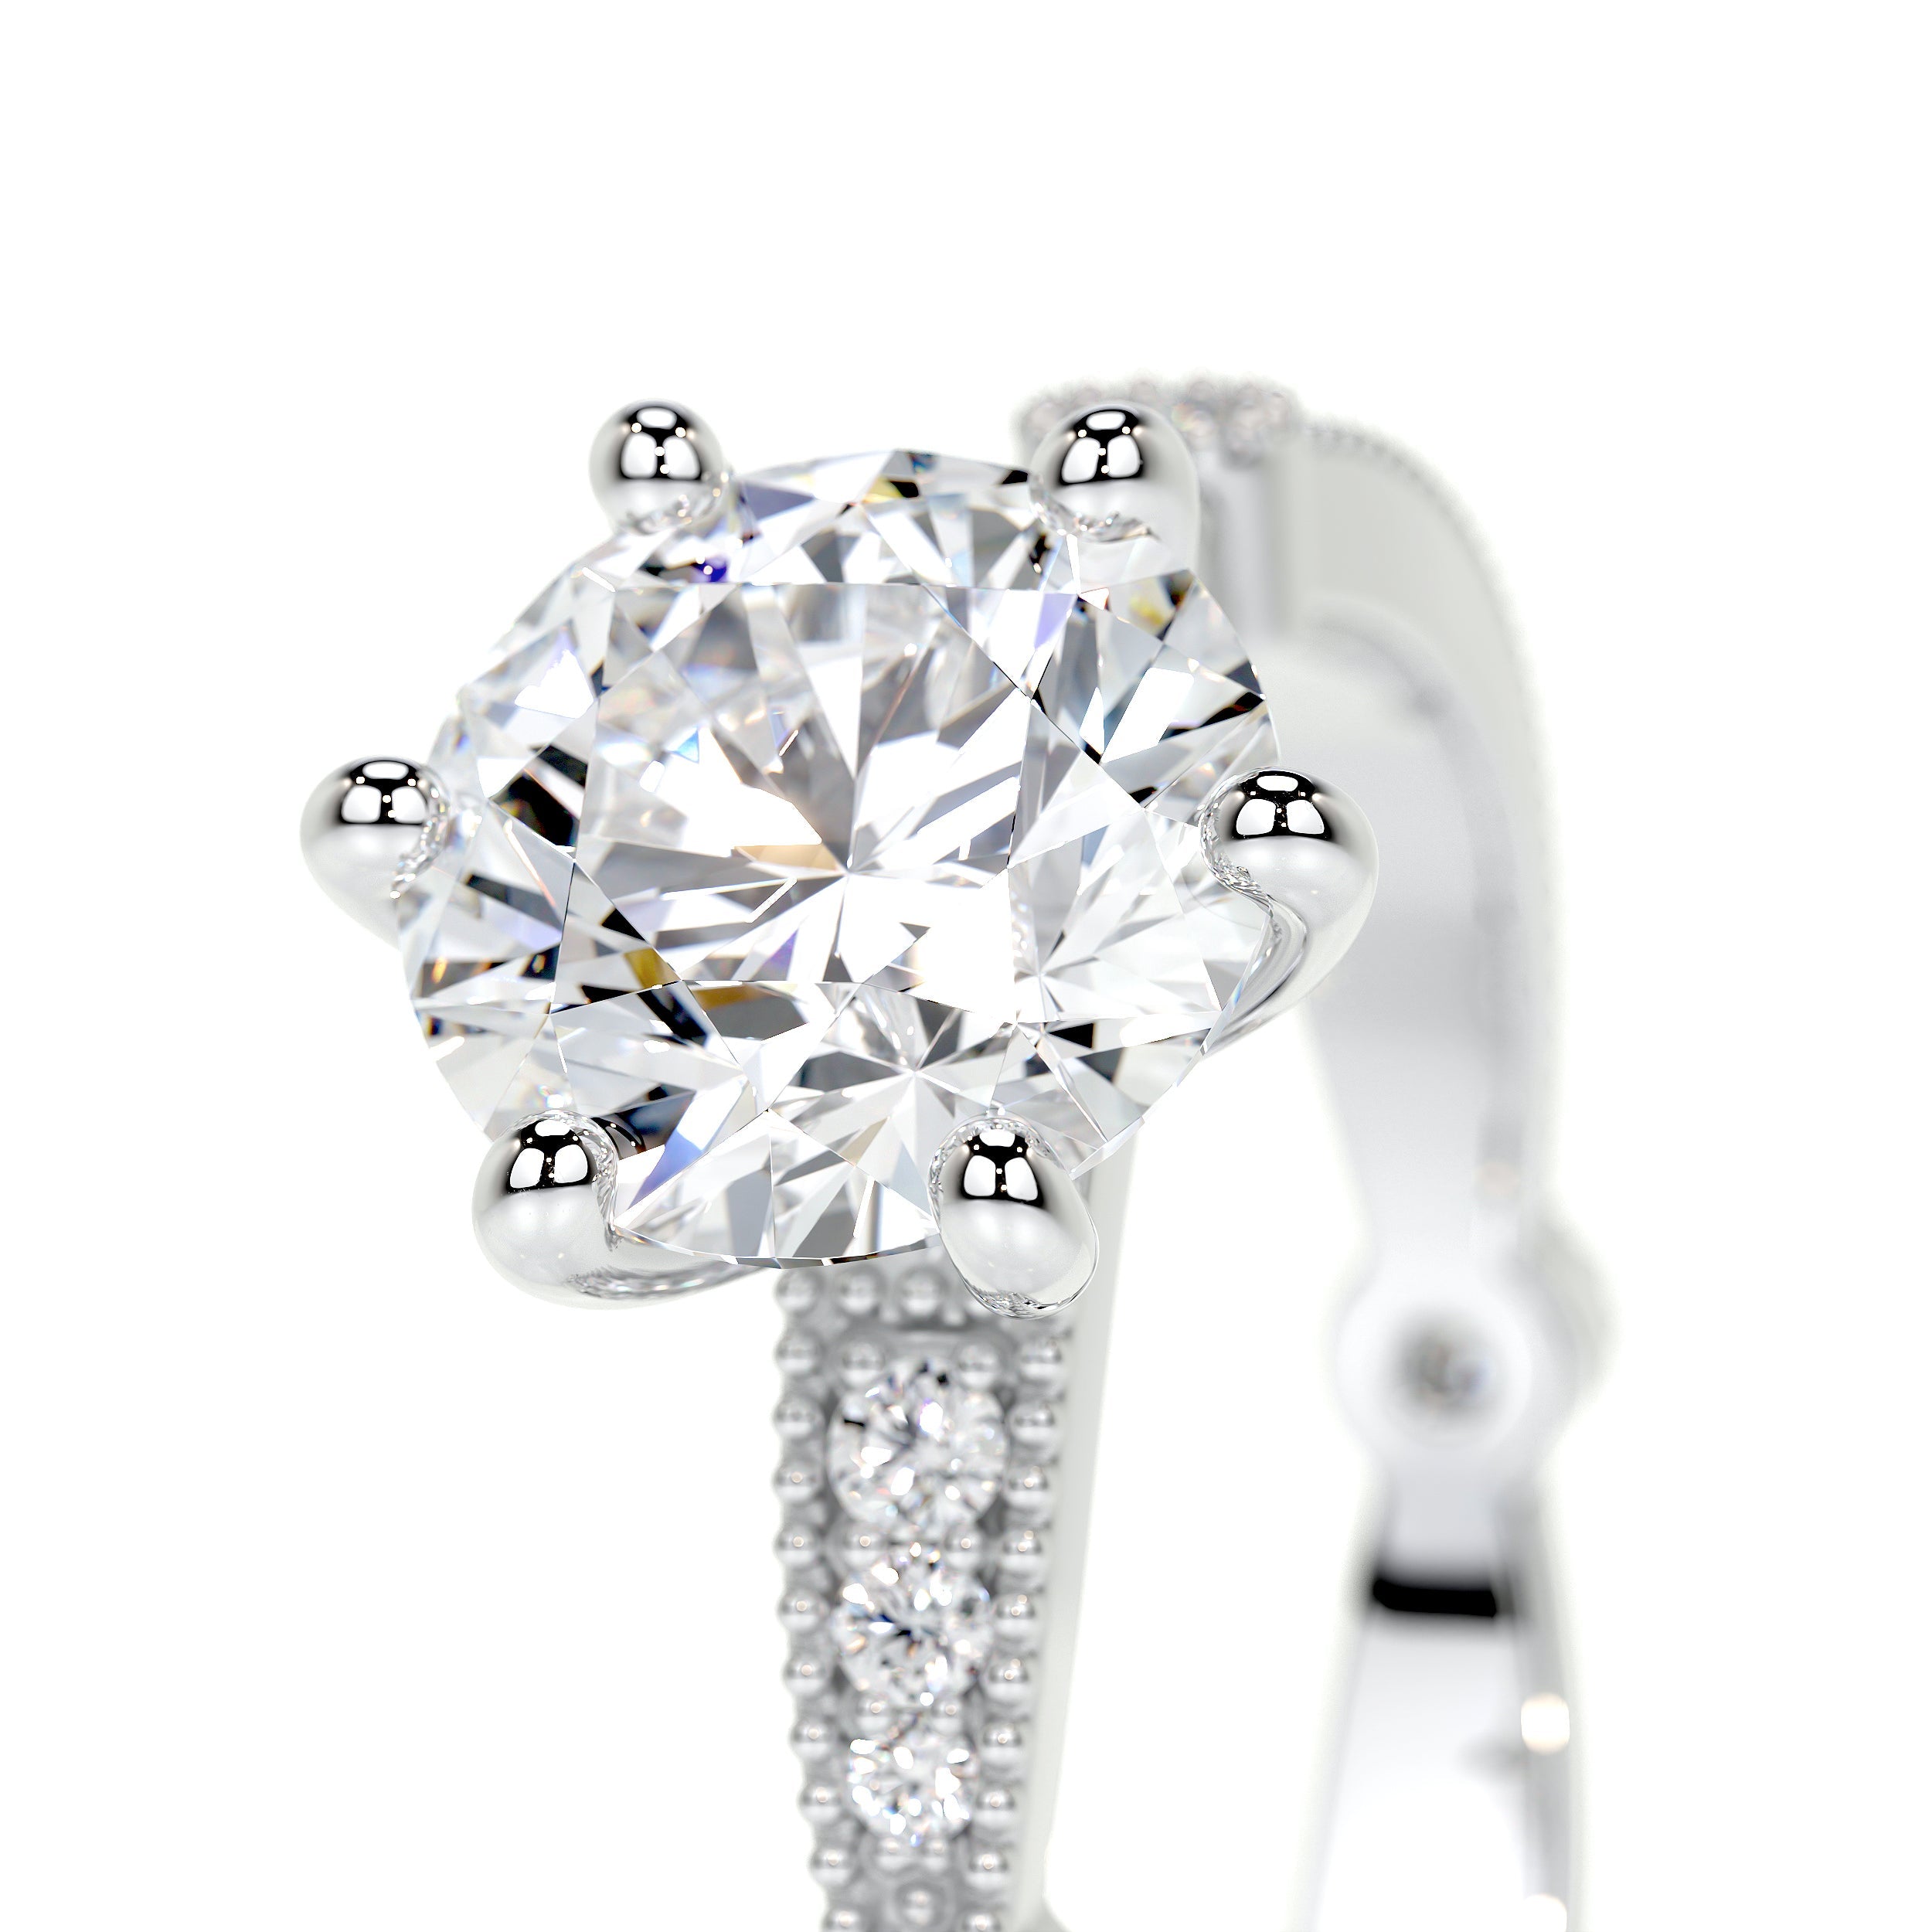 Amelia Lab Grown Diamond Ring   (2 Carat) - 14K White Gold